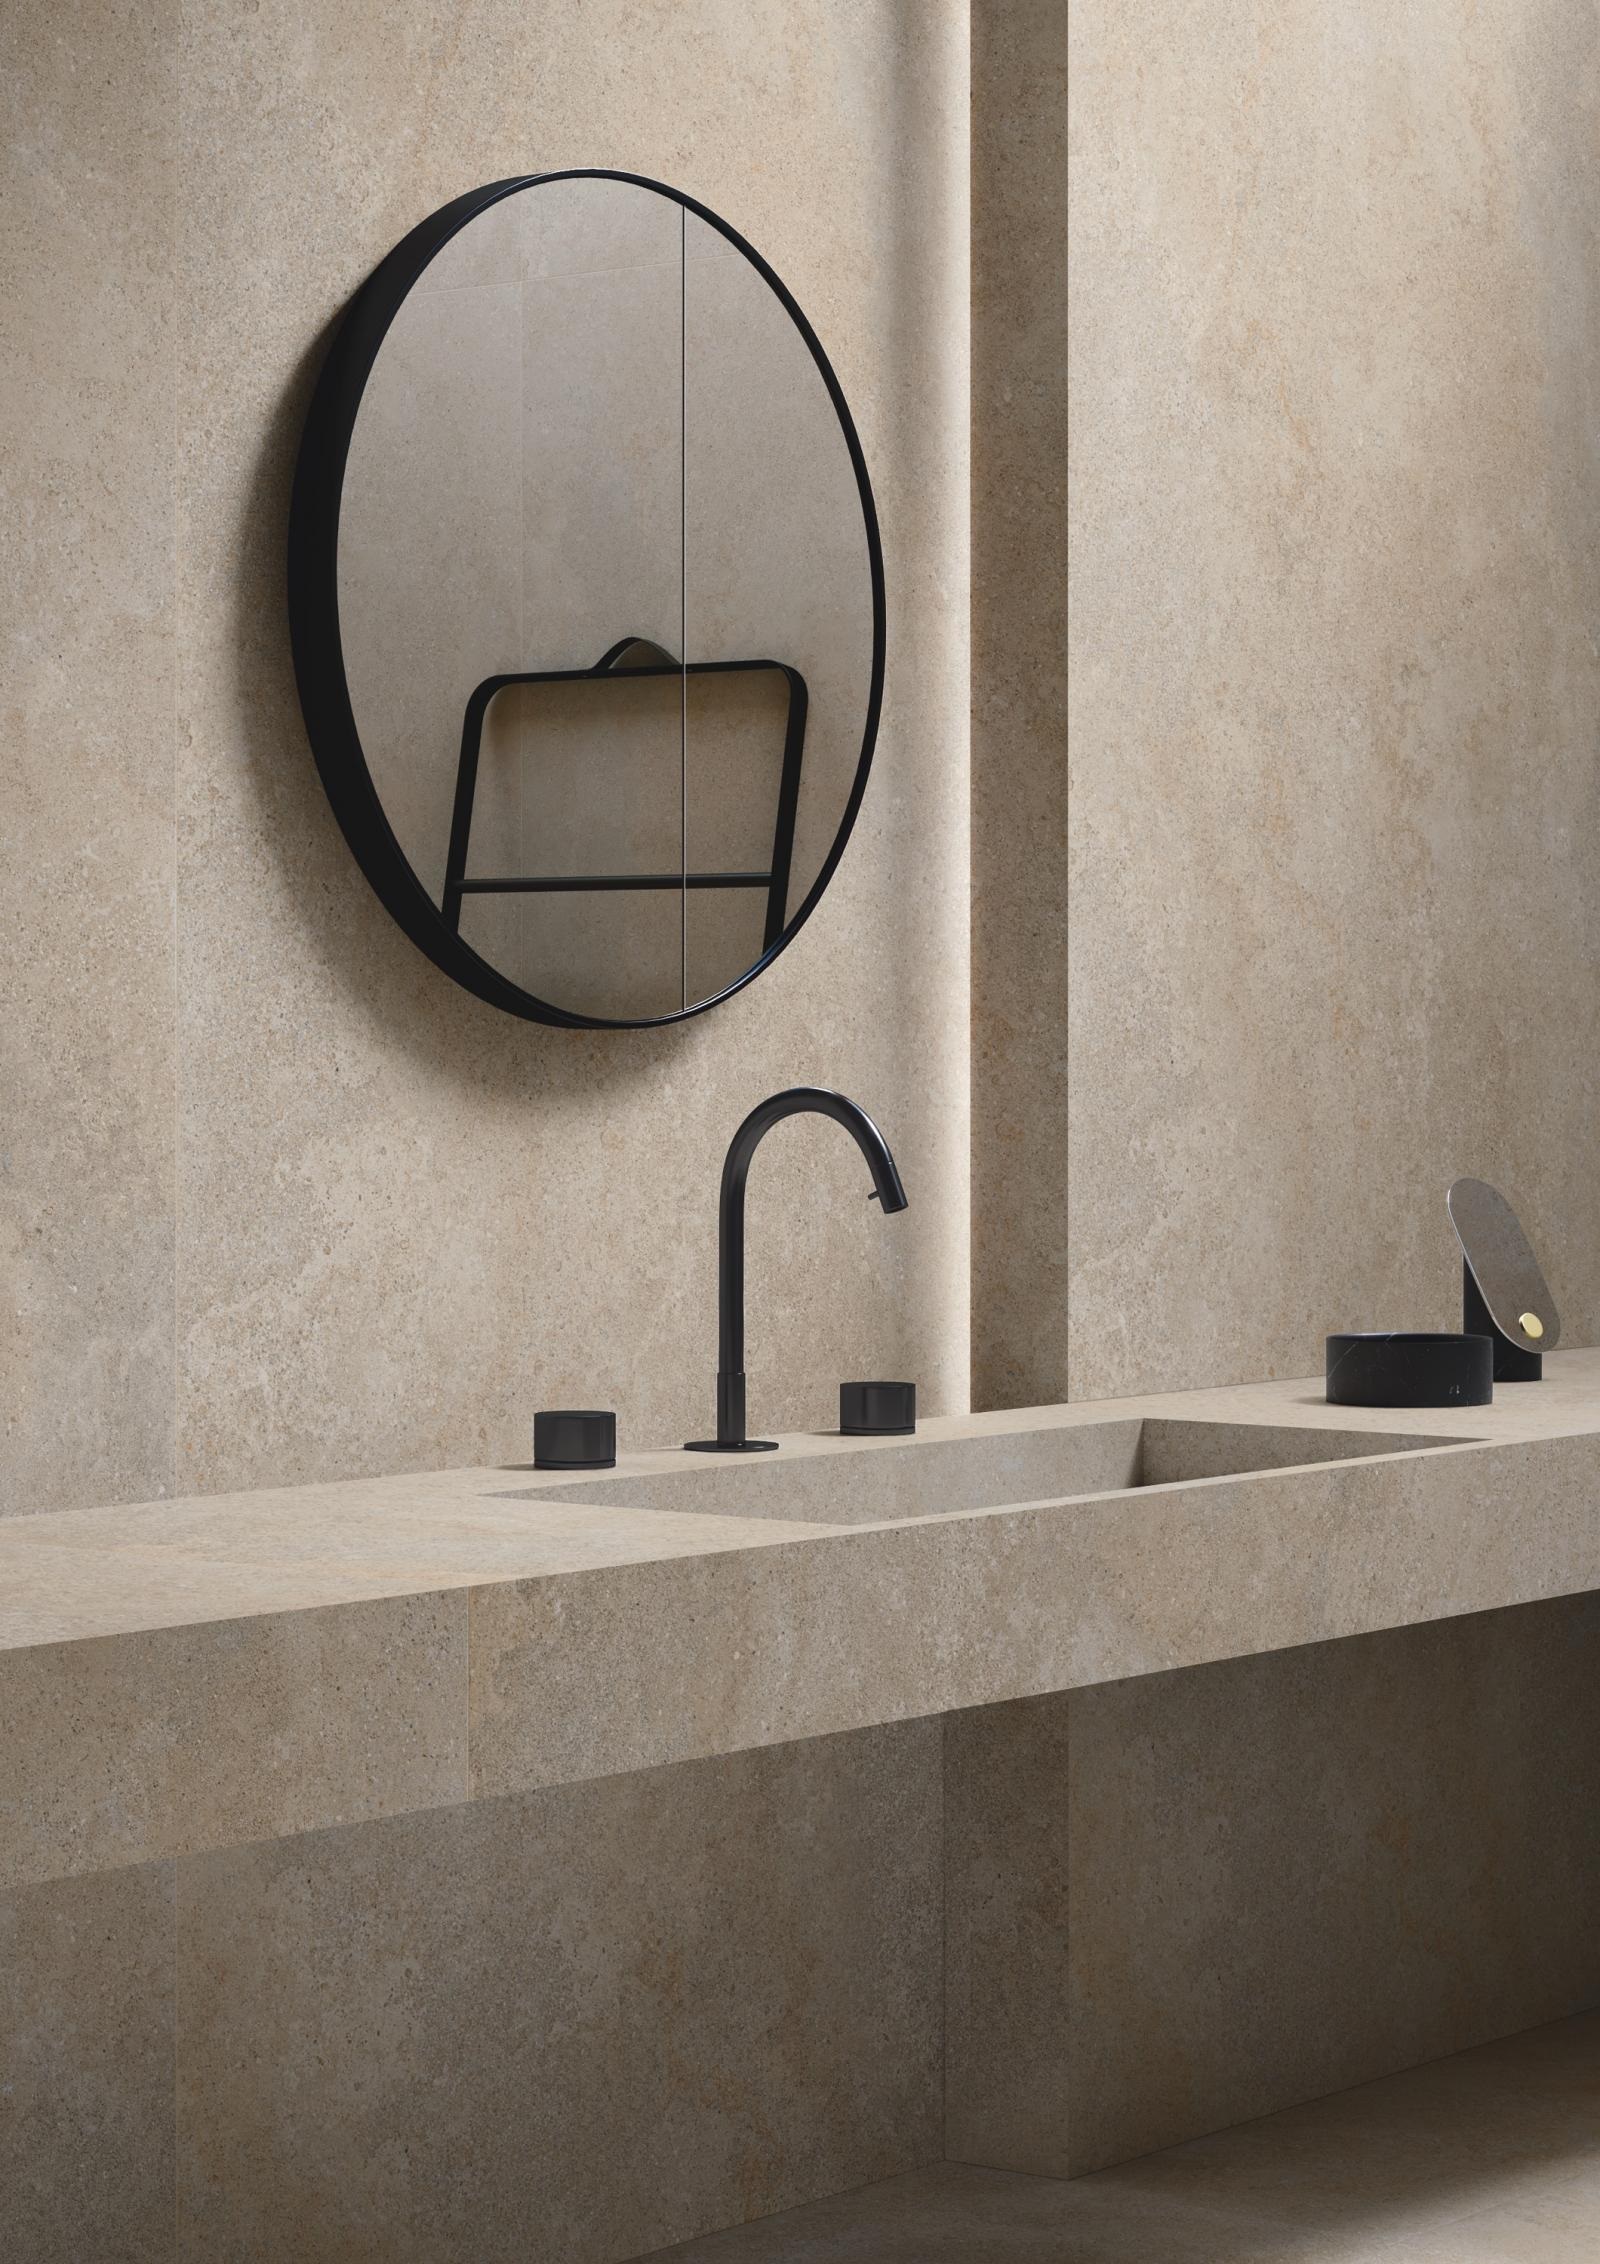 Carrelage effet pierre beige nuances claires et foncées 60x120 cm dans une salle de bain ton sur ton avec miroir rond et robinetterie noire